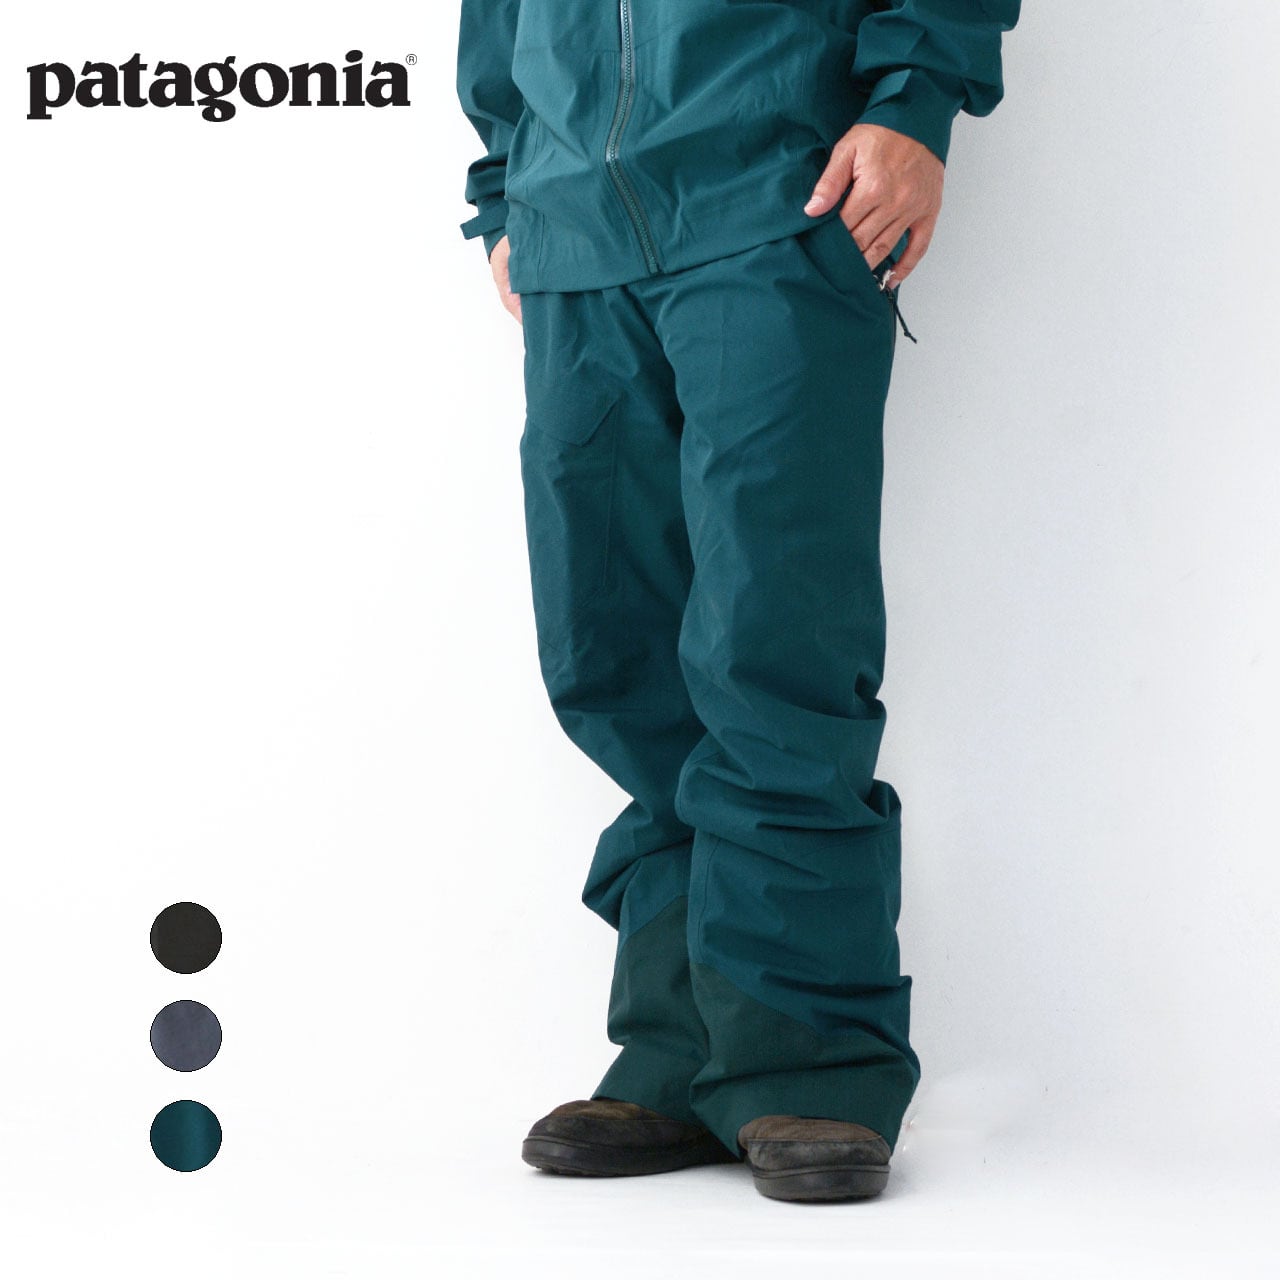 Patagonia [パタゴニア] Men's Powder Bowl Pants-Reg [31488] メンズ ...